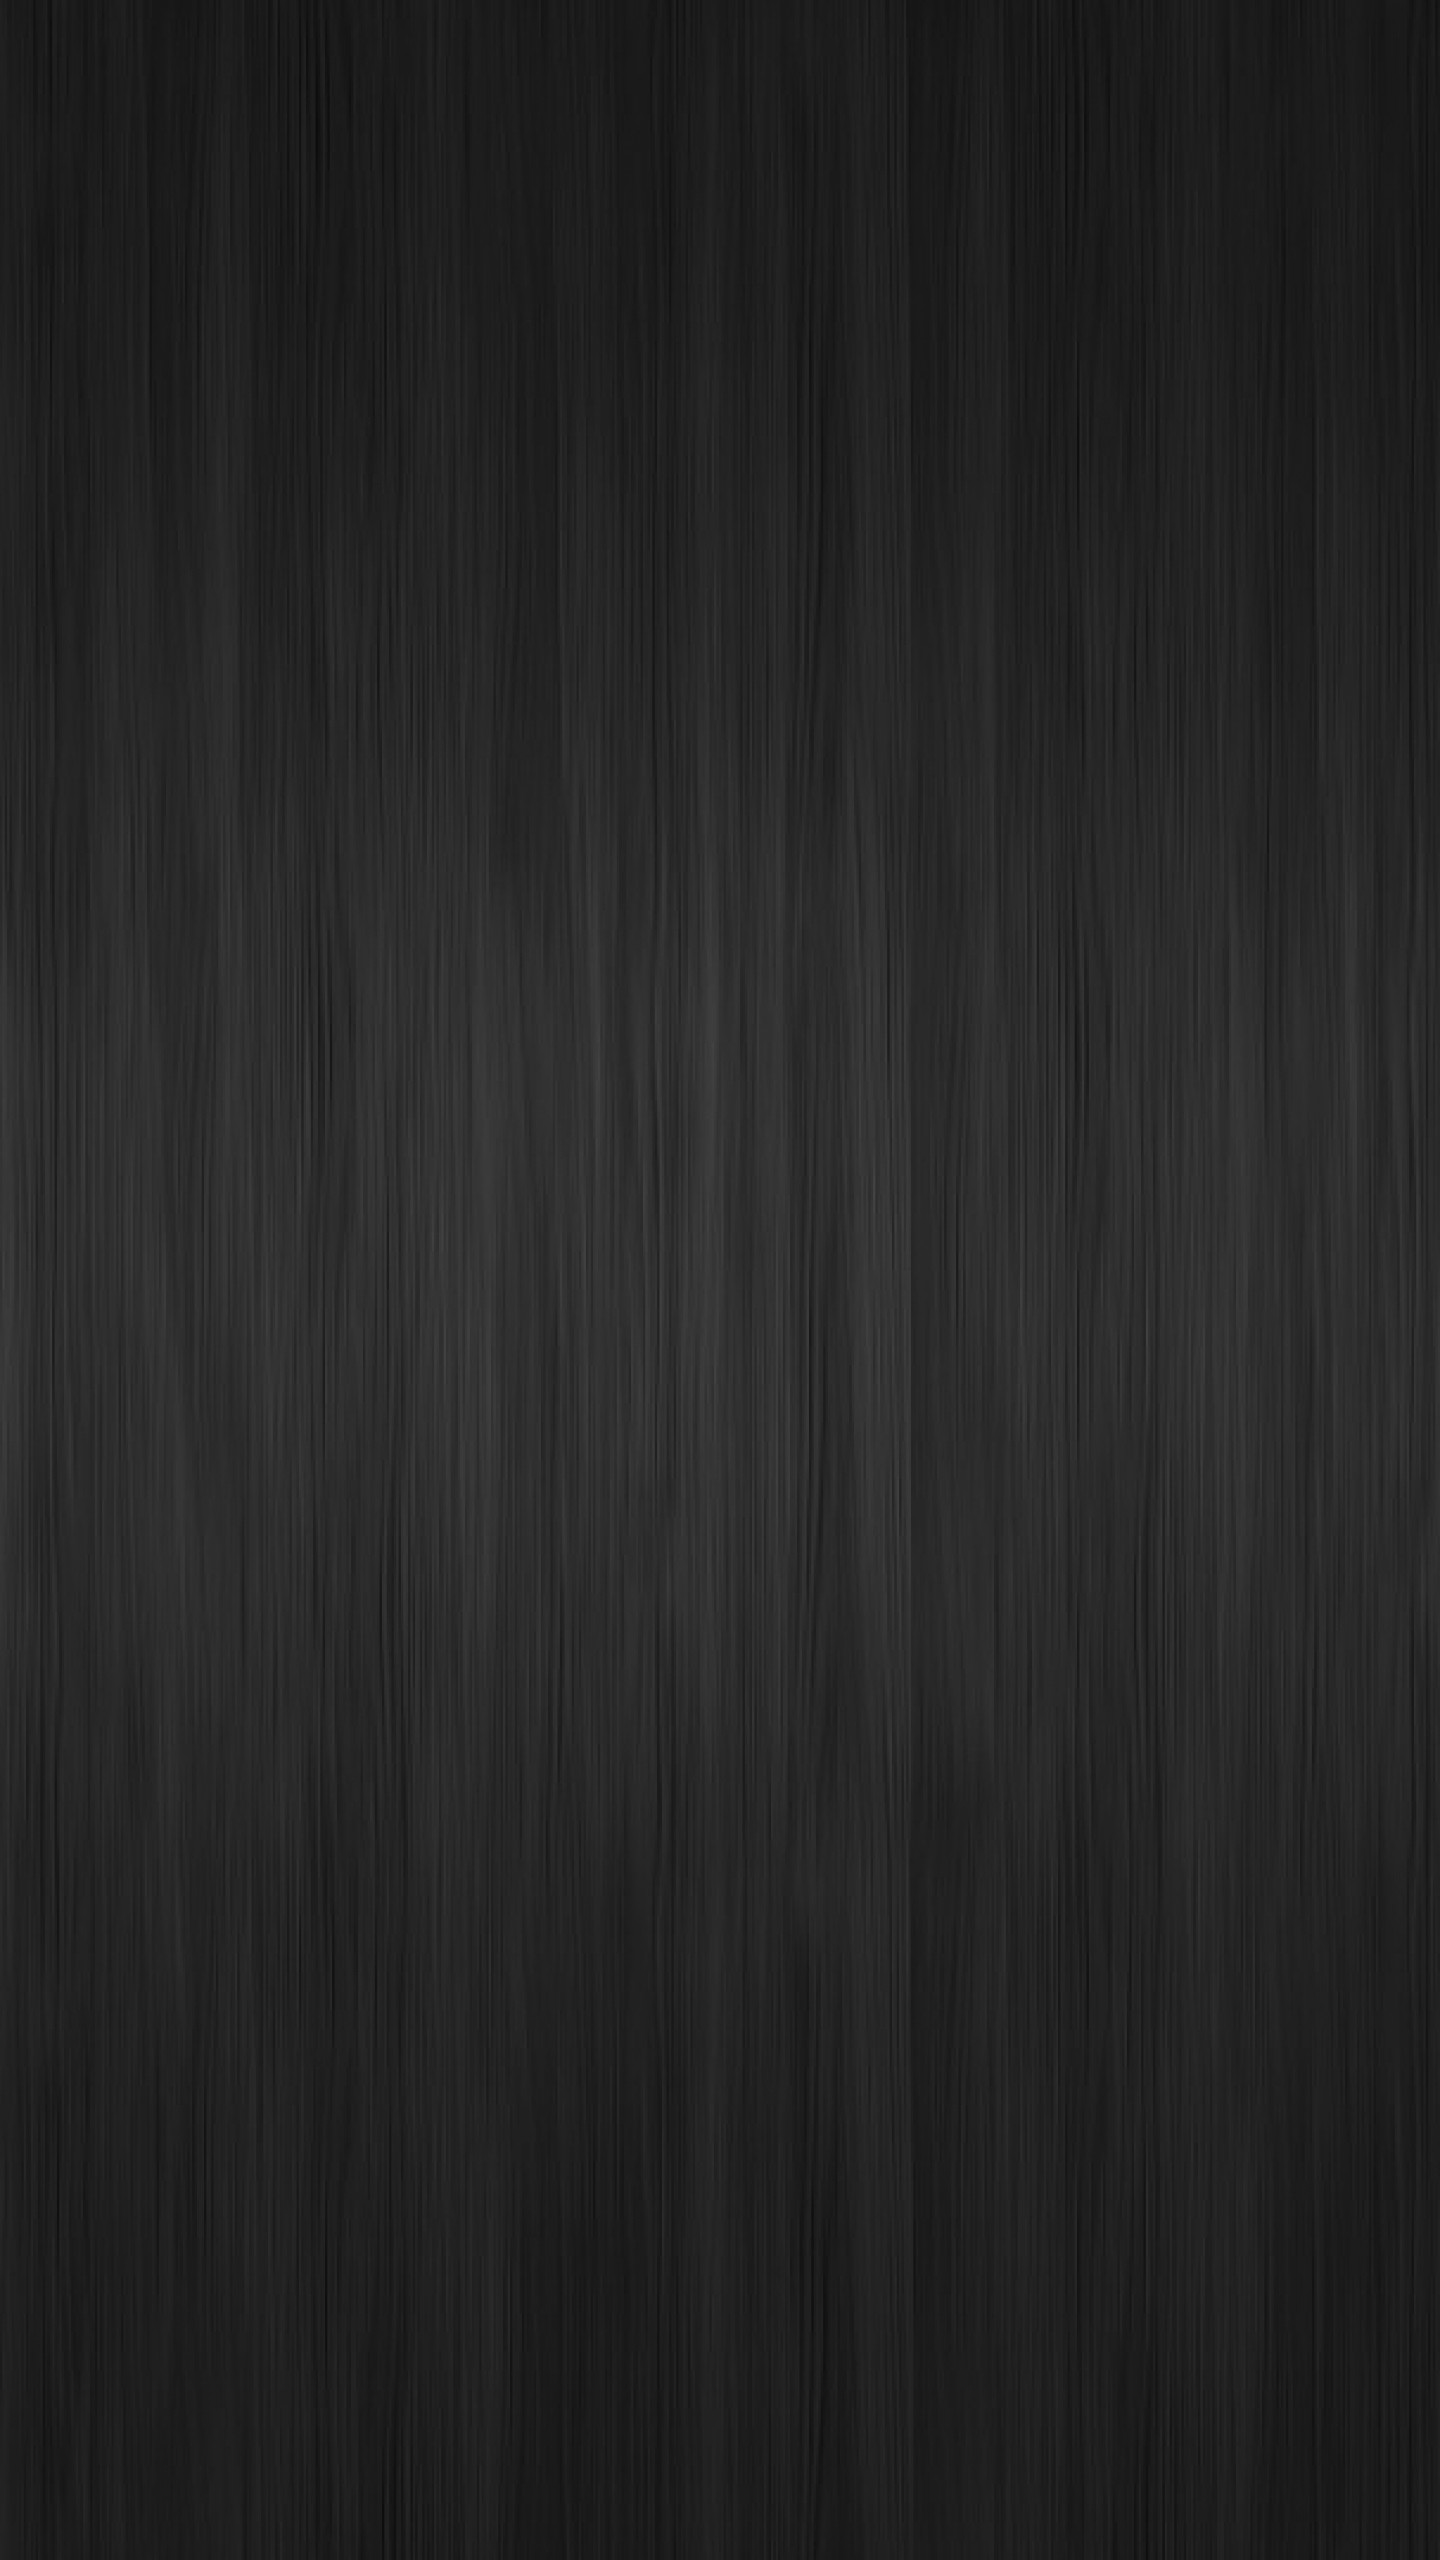 Wallpaper band, vertical, background, dark